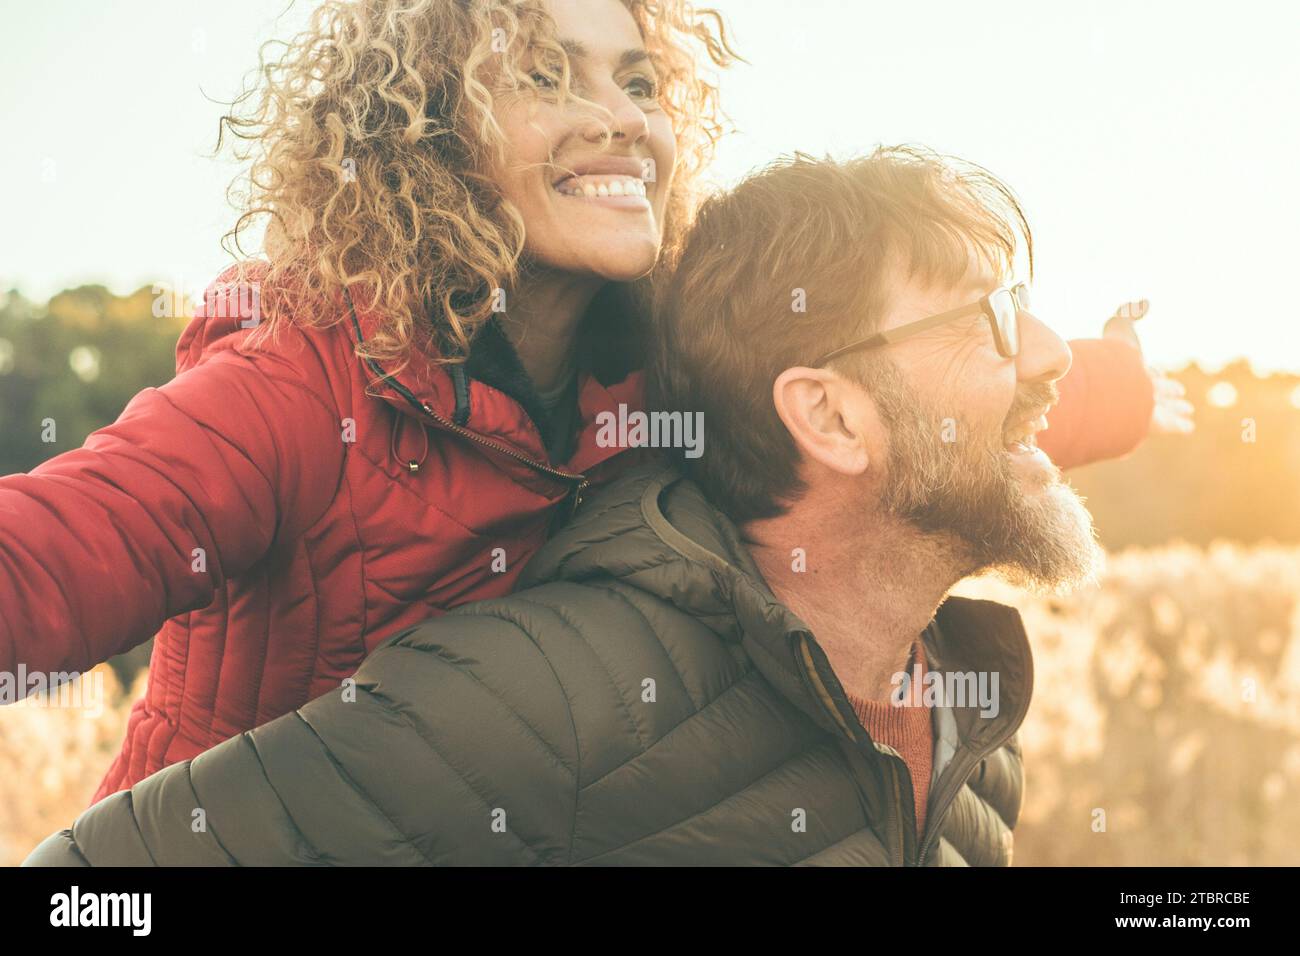 Glückliche Paare haben Spaß zusammen bei Freizeitaktivitäten im Freien im Naturgebiet während Sonnenuntergang und goldenen Stunden Licht. Der Mann trägt eine Frau auf dem Rücken. Menschen genießen das Leben und lachen. Winterherbsttag Stockfoto